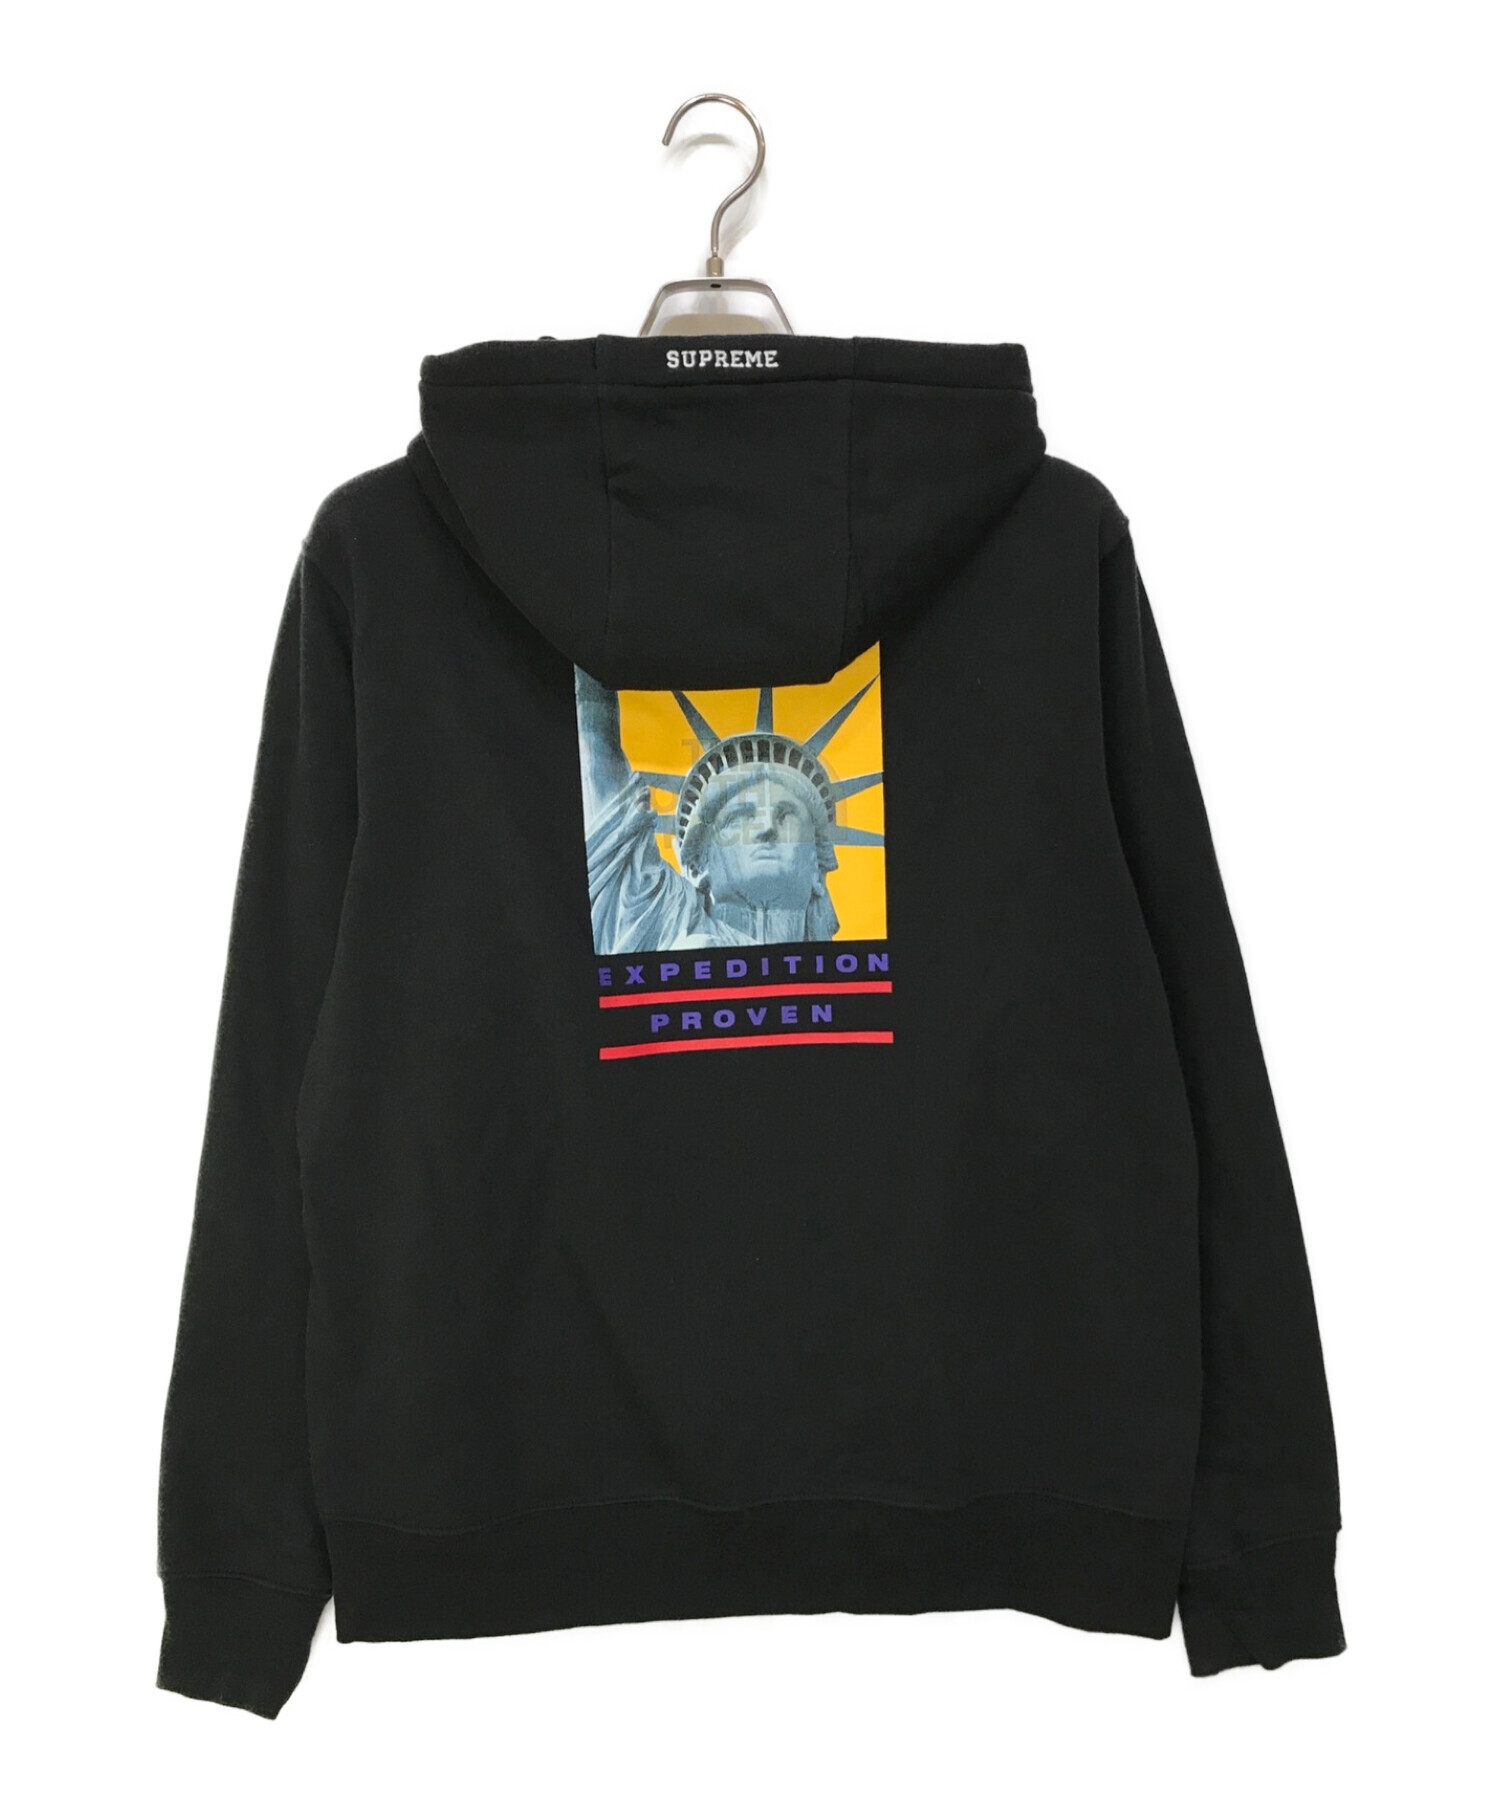 Supreme TNF Statue of Liberty Sweatshirt